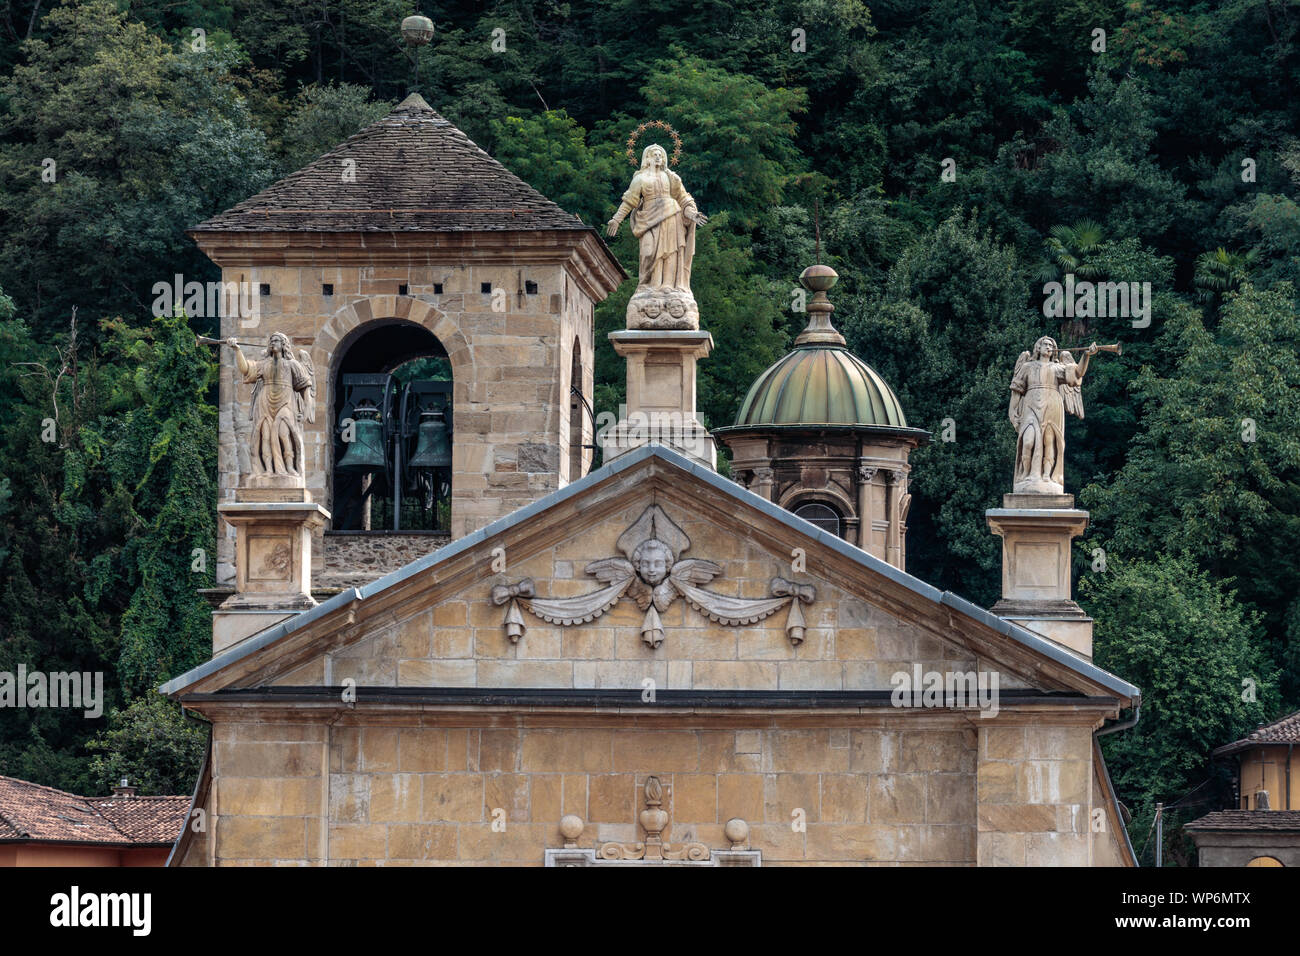 The "Chiesa collegiata dei Santi Pietro e Stefano", a historical Church in Bellinzona, Ticino, Switzerland, with the bell tower and decorative statues Stock Photo